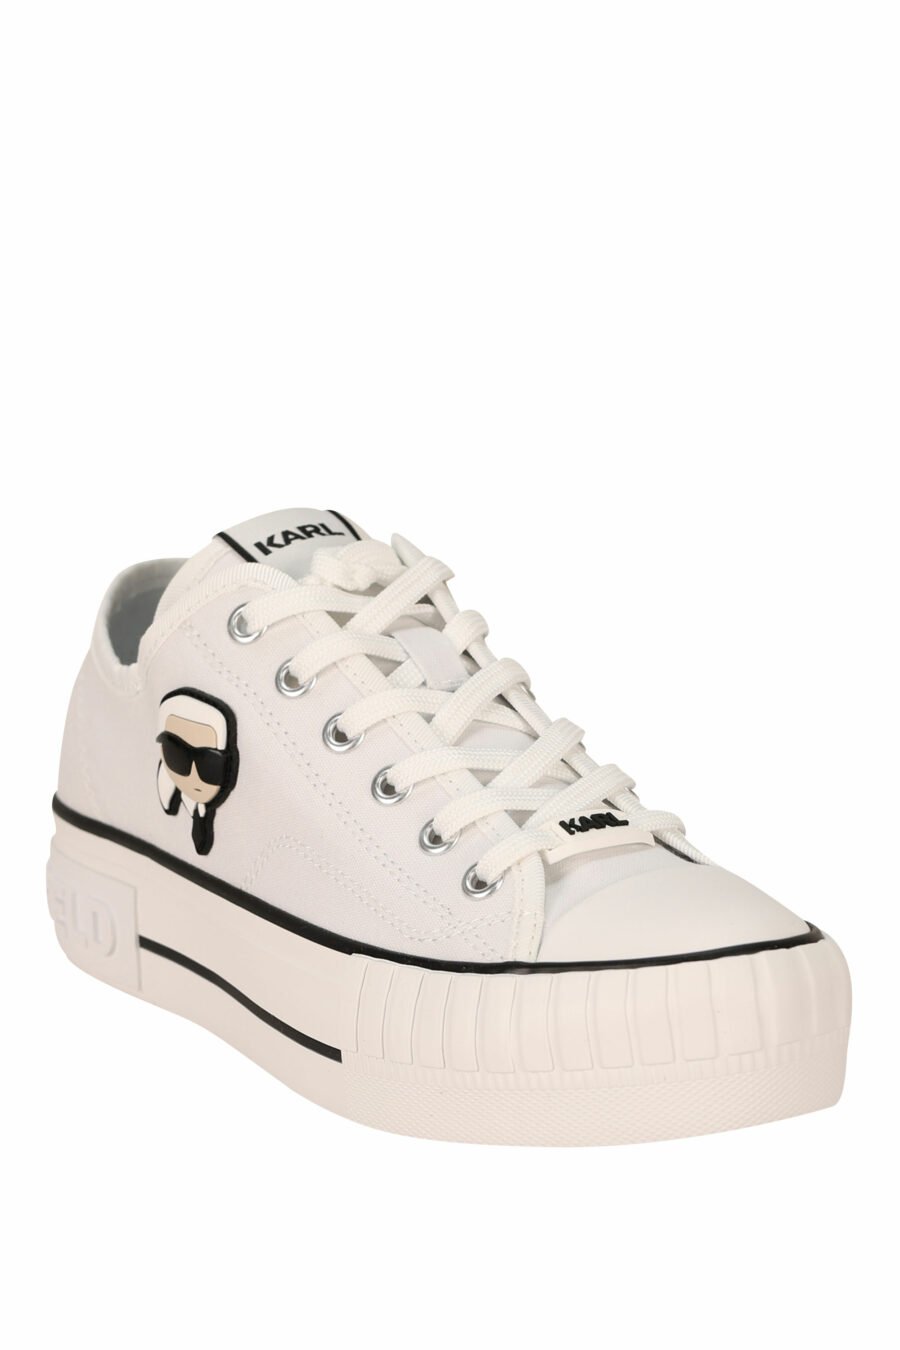 Zapatillas blancas estilo "converse" con minilogo de goma "karl" - 5059529384639 1